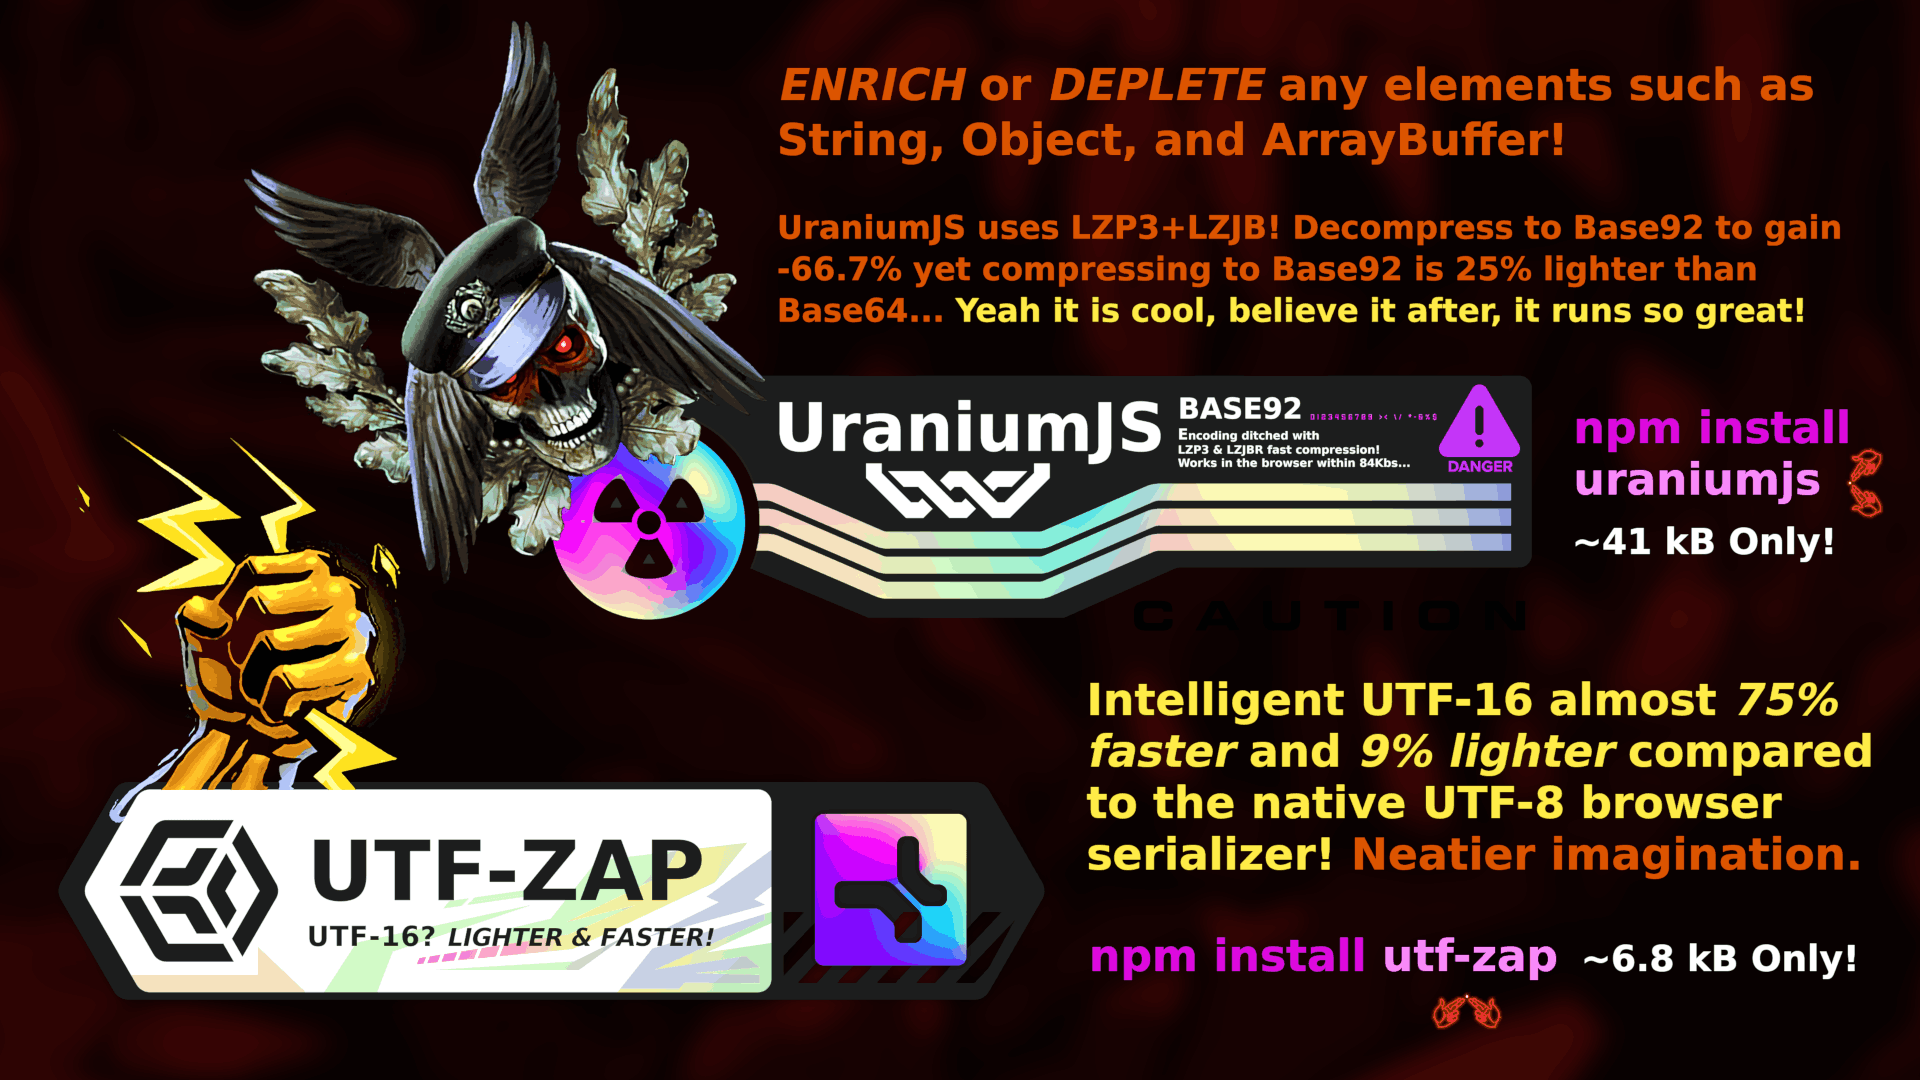 Branding of uraniumjs and utfzap